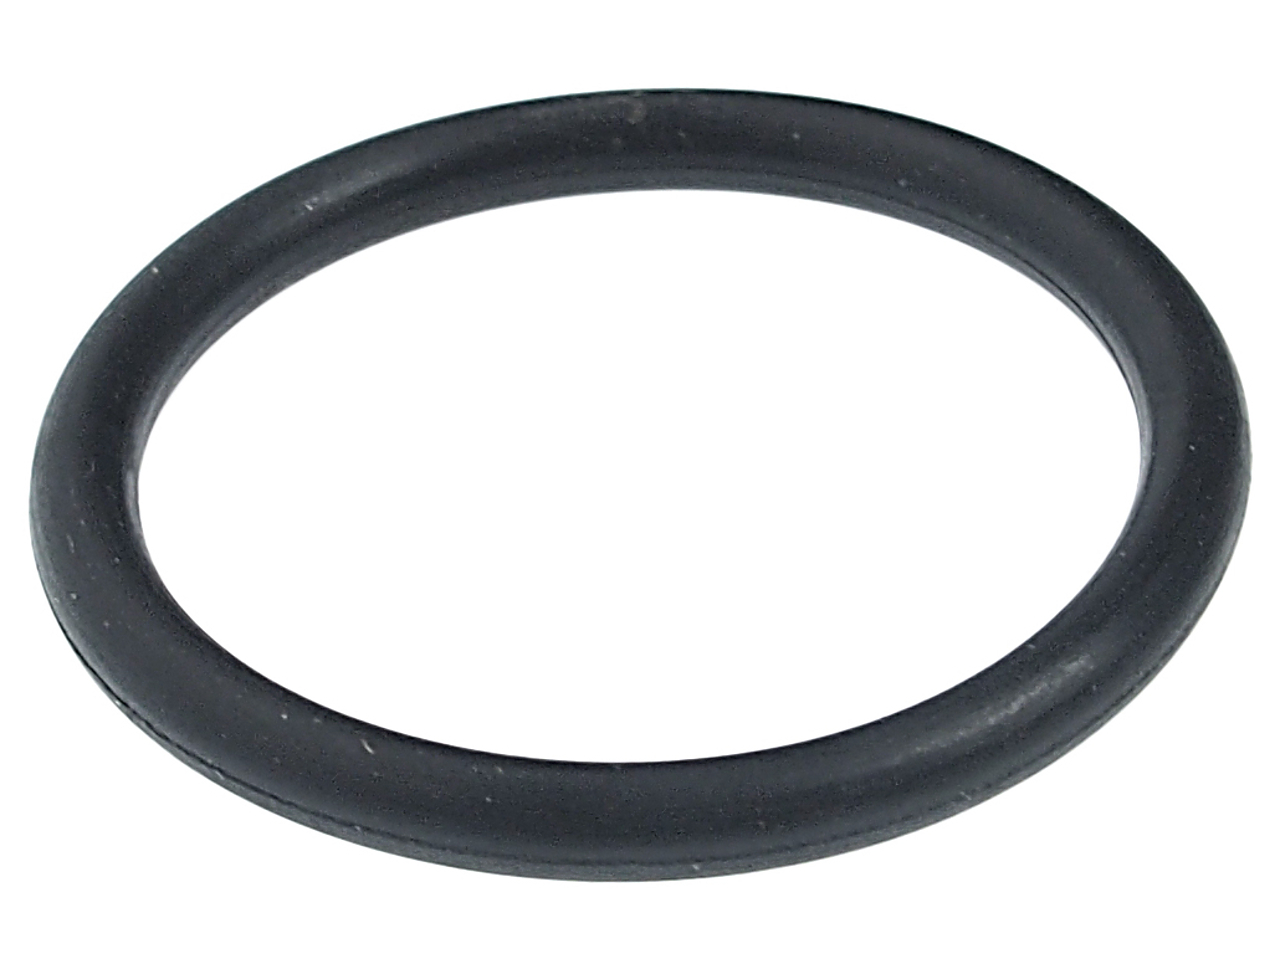 Ремкомплект для цилиндра JTC-4885 (11) кольцо уплотнительное JTC